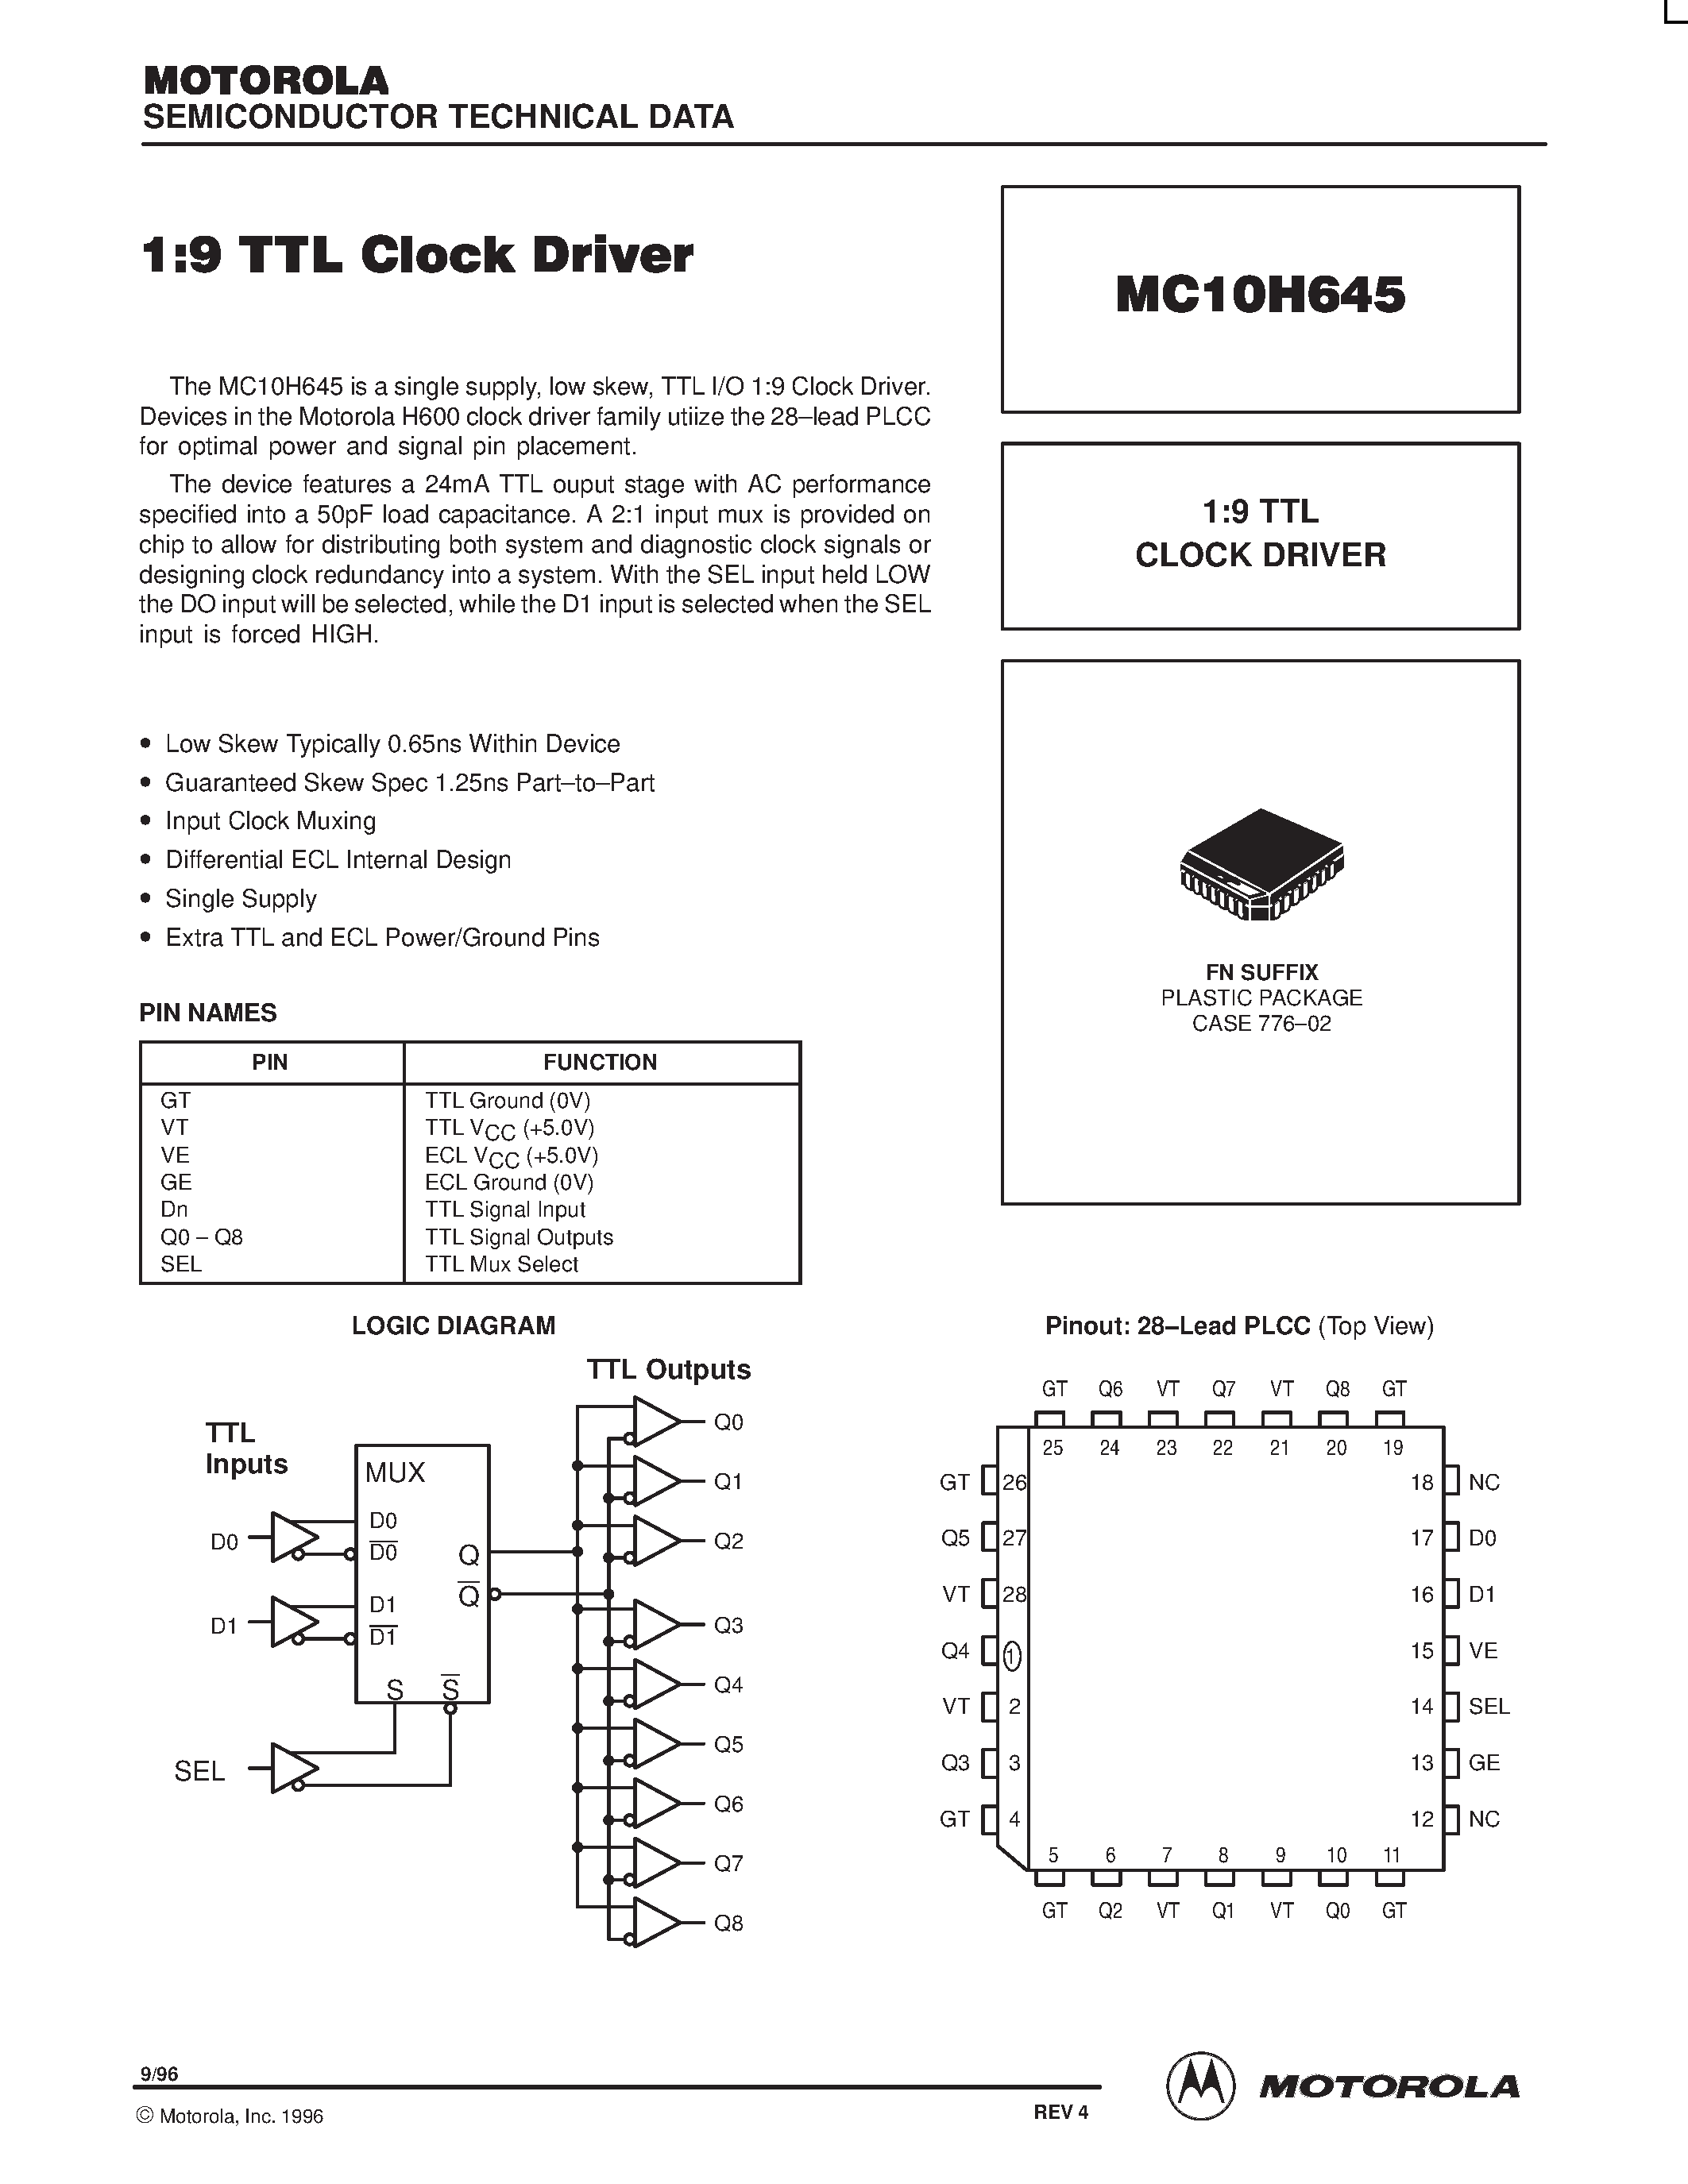 Даташит MC10H645 - 1:9 TTL CLOCK DRIVER страница 1